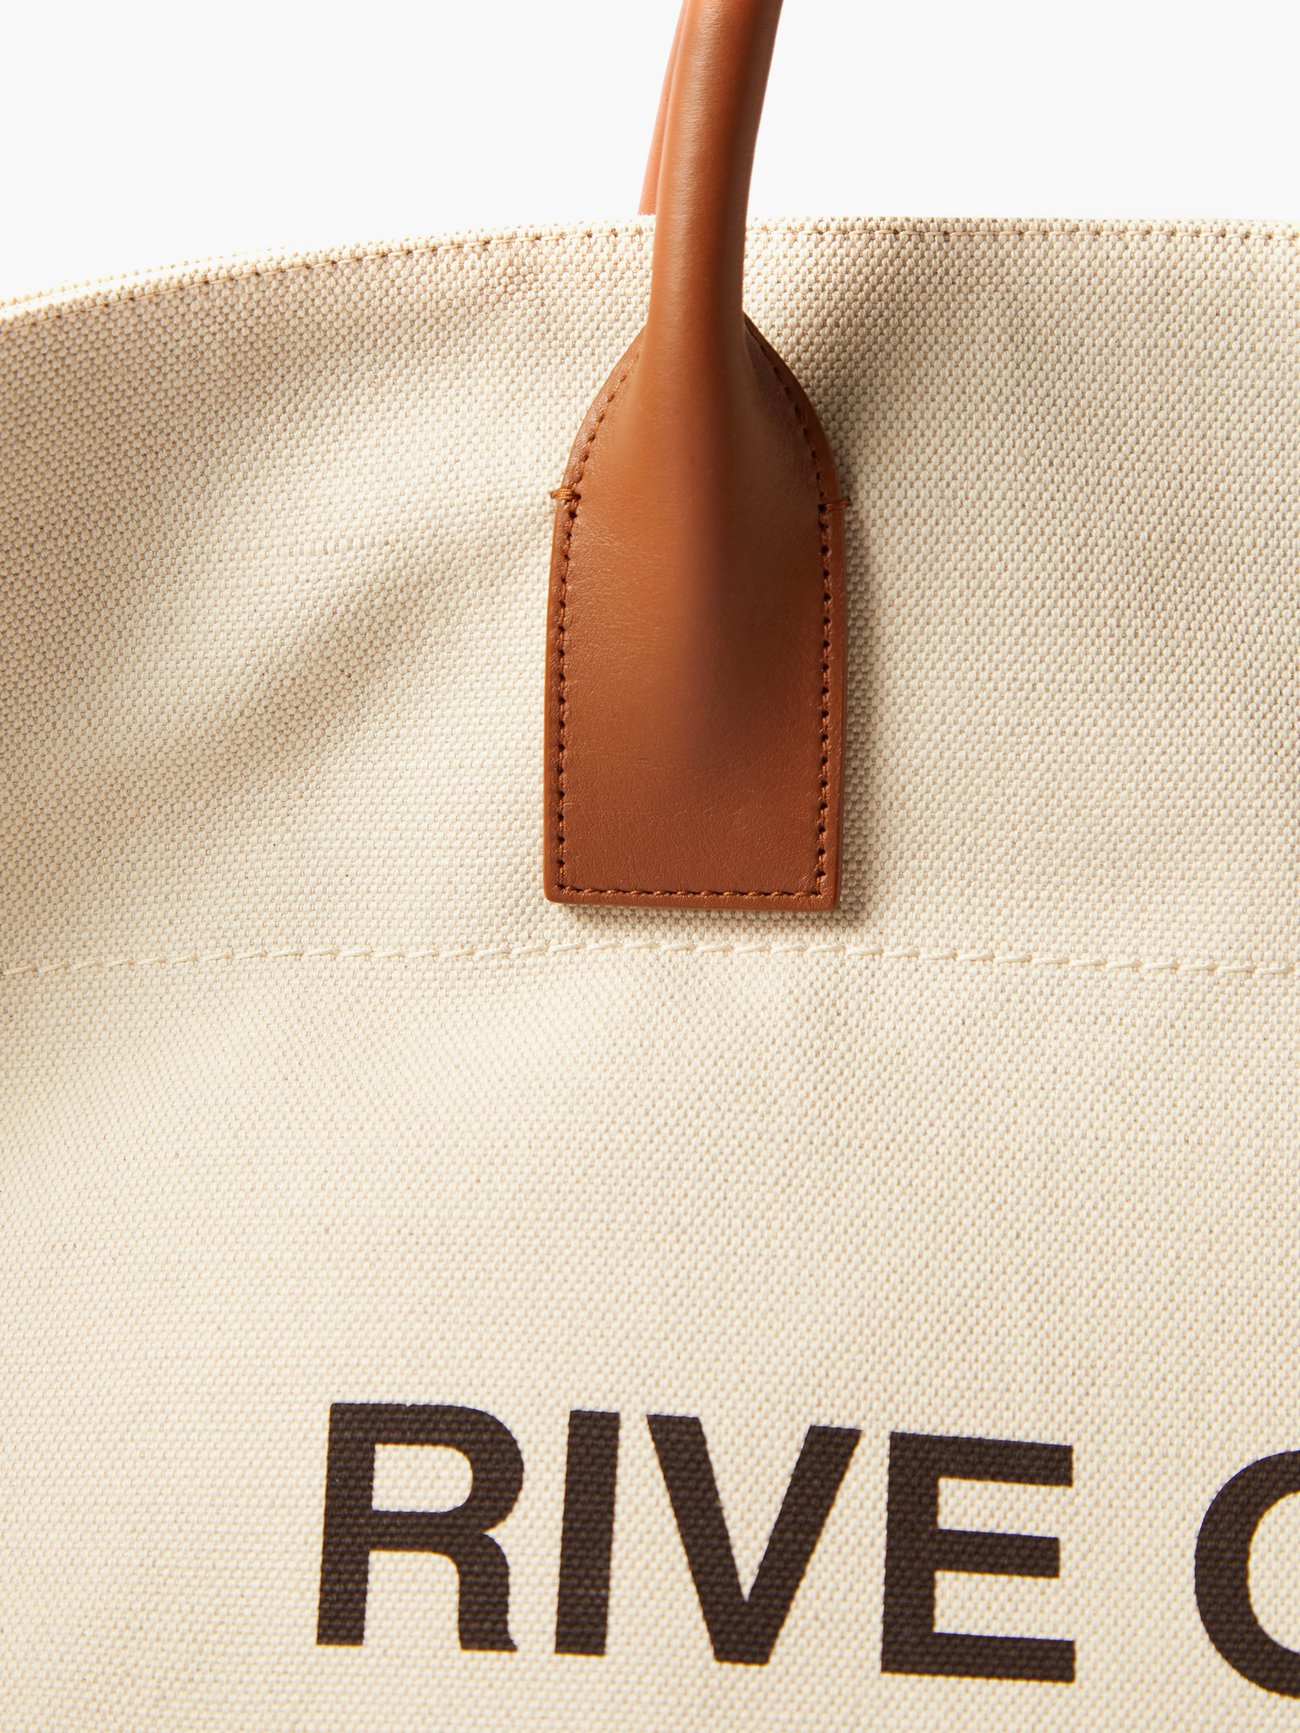 Saint Laurent Men's Rive Gauche Print Canvas-Leather Maxi Shopping Bag